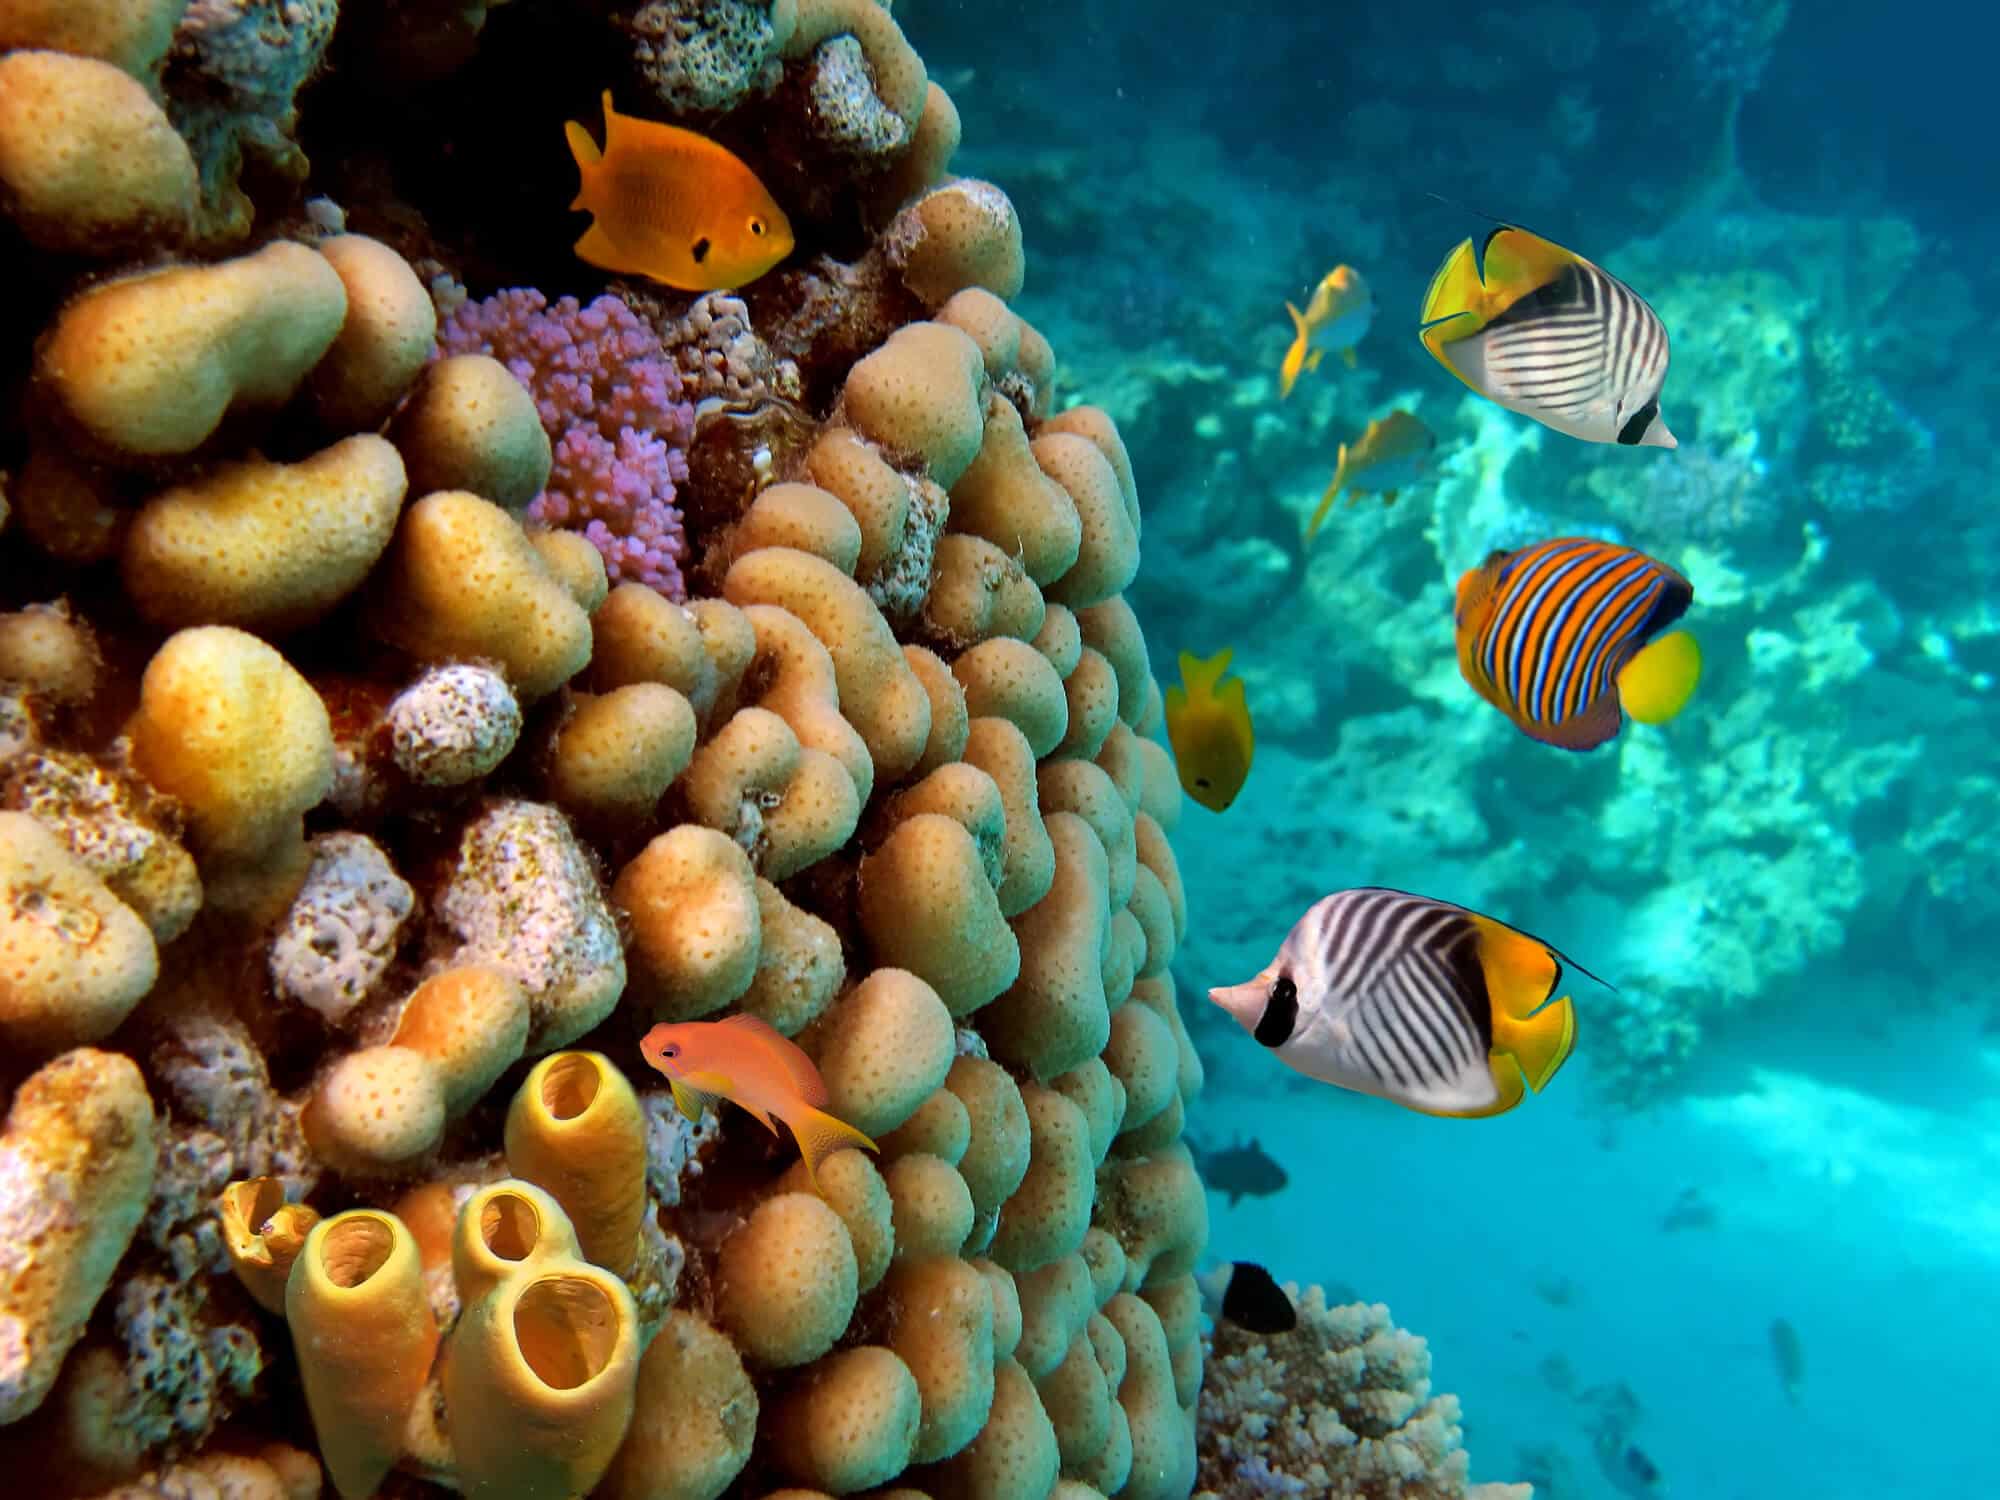 الشعاب المرجانية في البحر الأحمر. الصورة: موقع Depositphotos.com